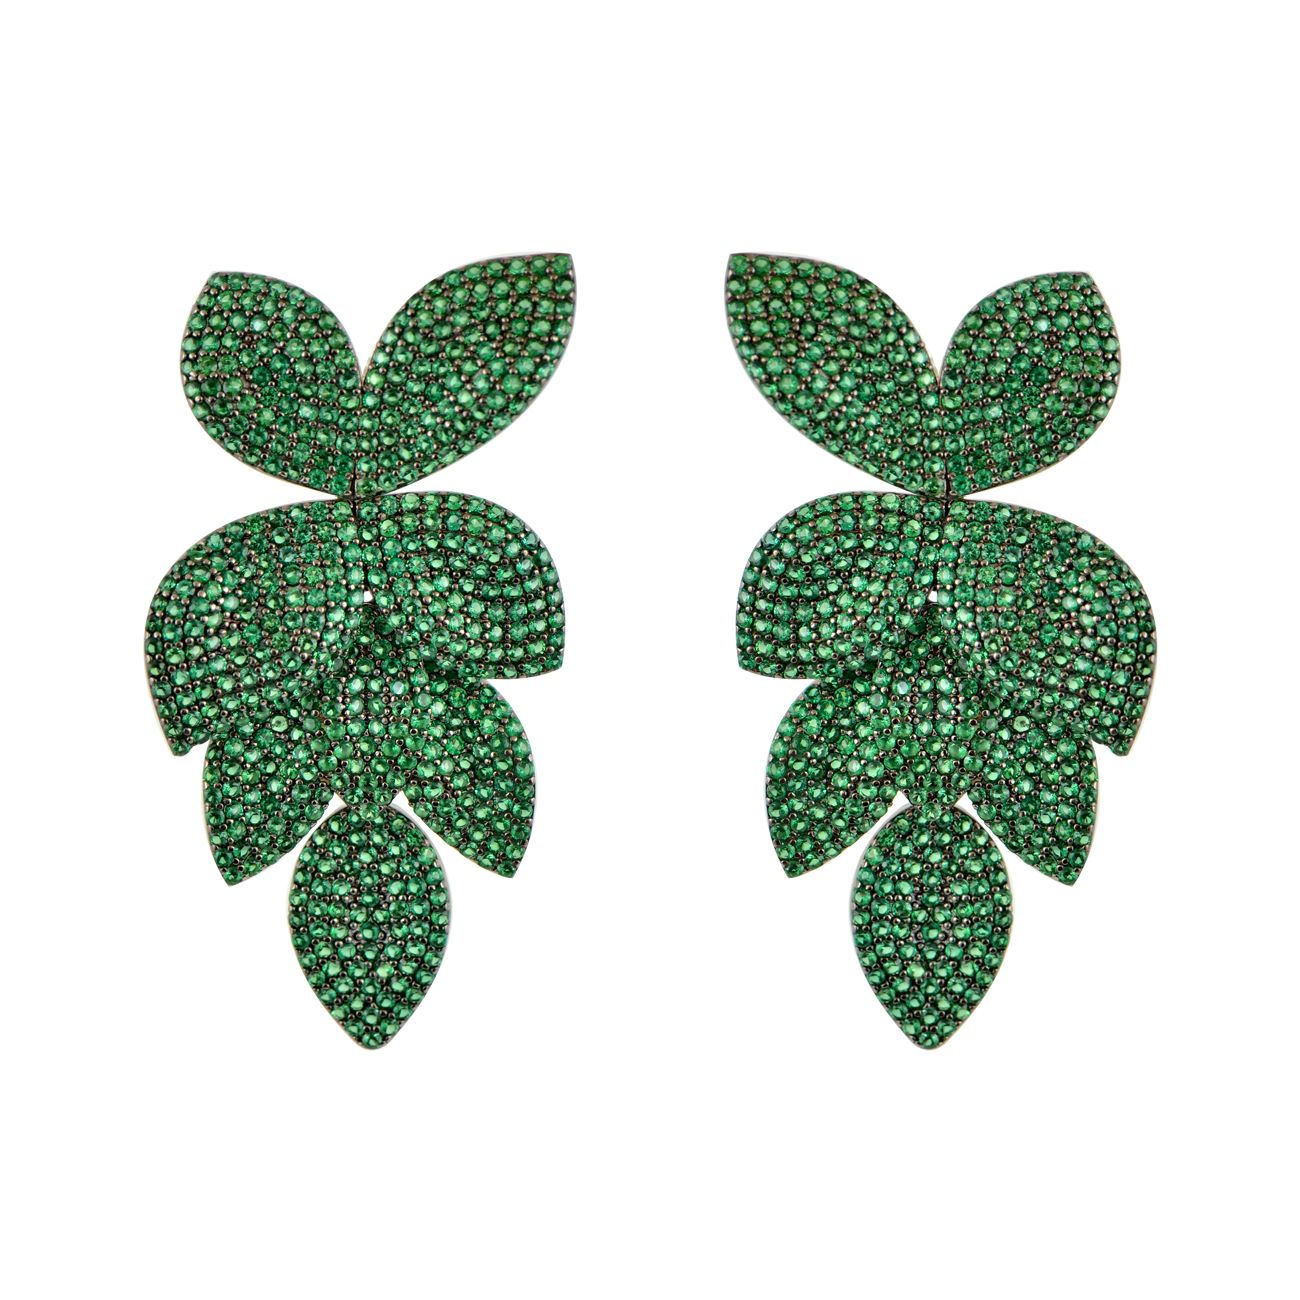 Εικόνα του προιόντος Ασημένια Μακριά Σκουλαρίκια Πράσινα Φύλλα